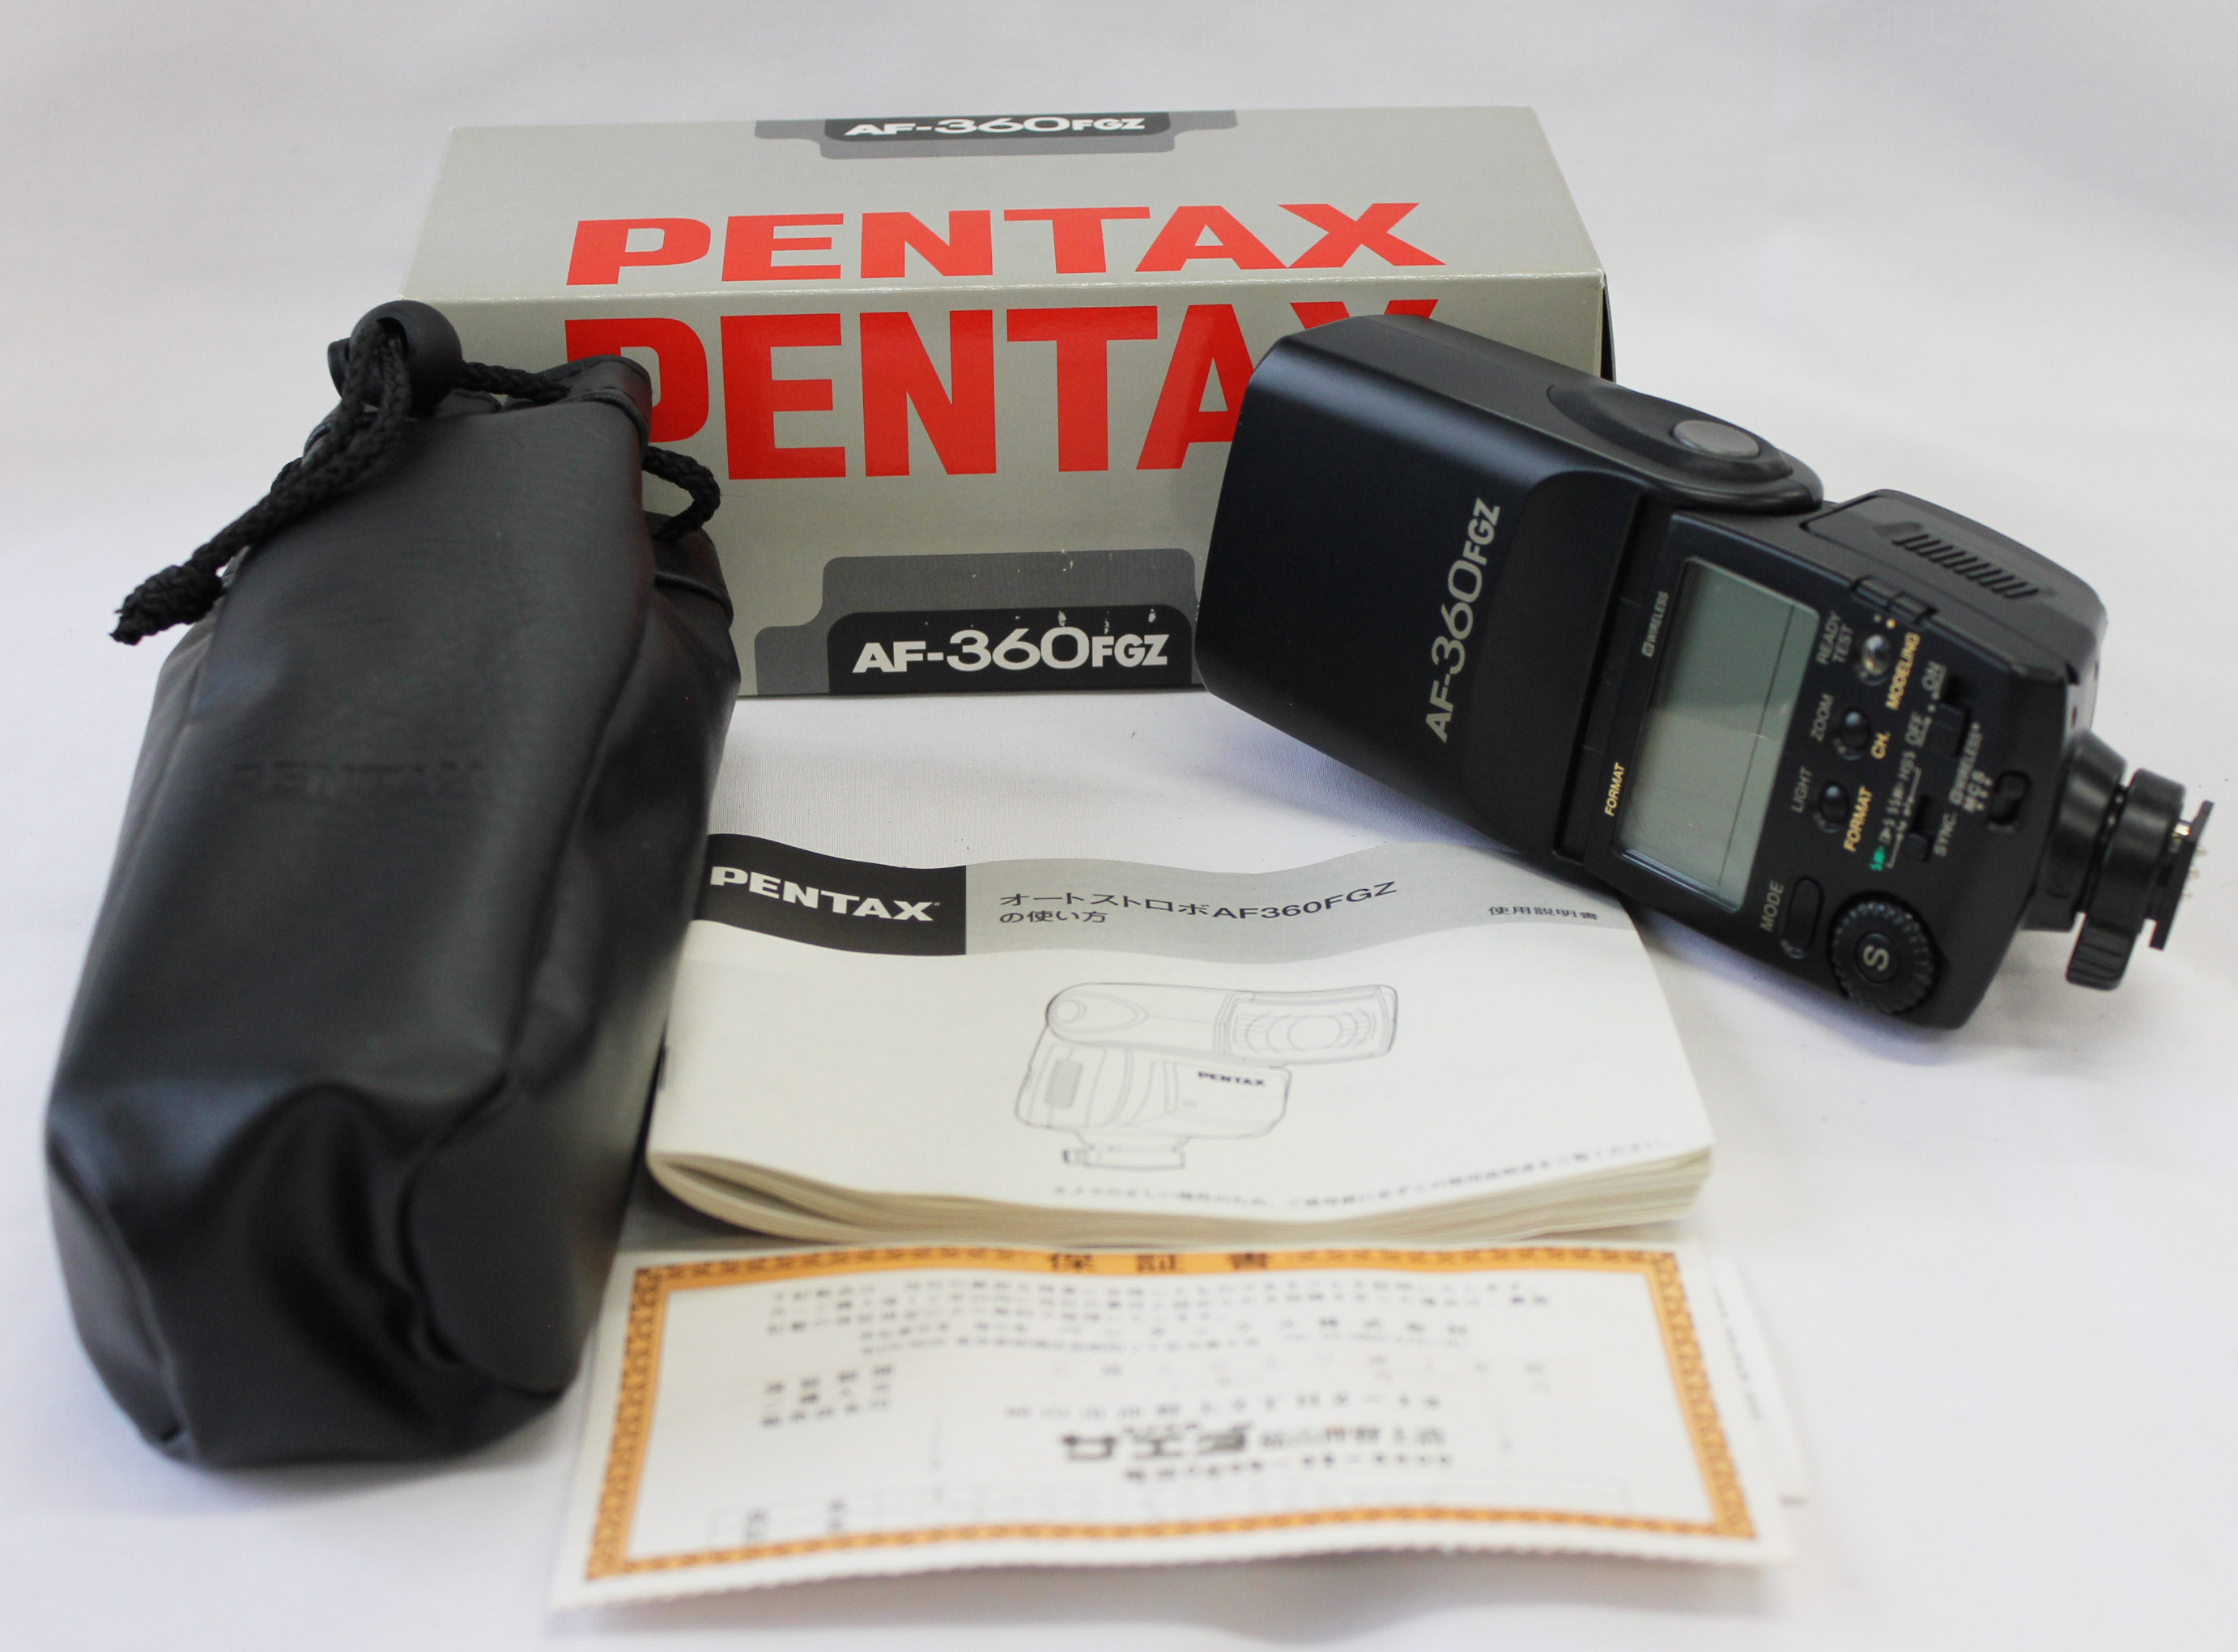 Japan Used Camera Shop | [Mint] Pentax AF-360FGZ Shoe Mount Flash for Pentax 67II, MZ-S, MZ-L, *ist, Z-10, Z-5, Z-5P, Z-1 from Japan